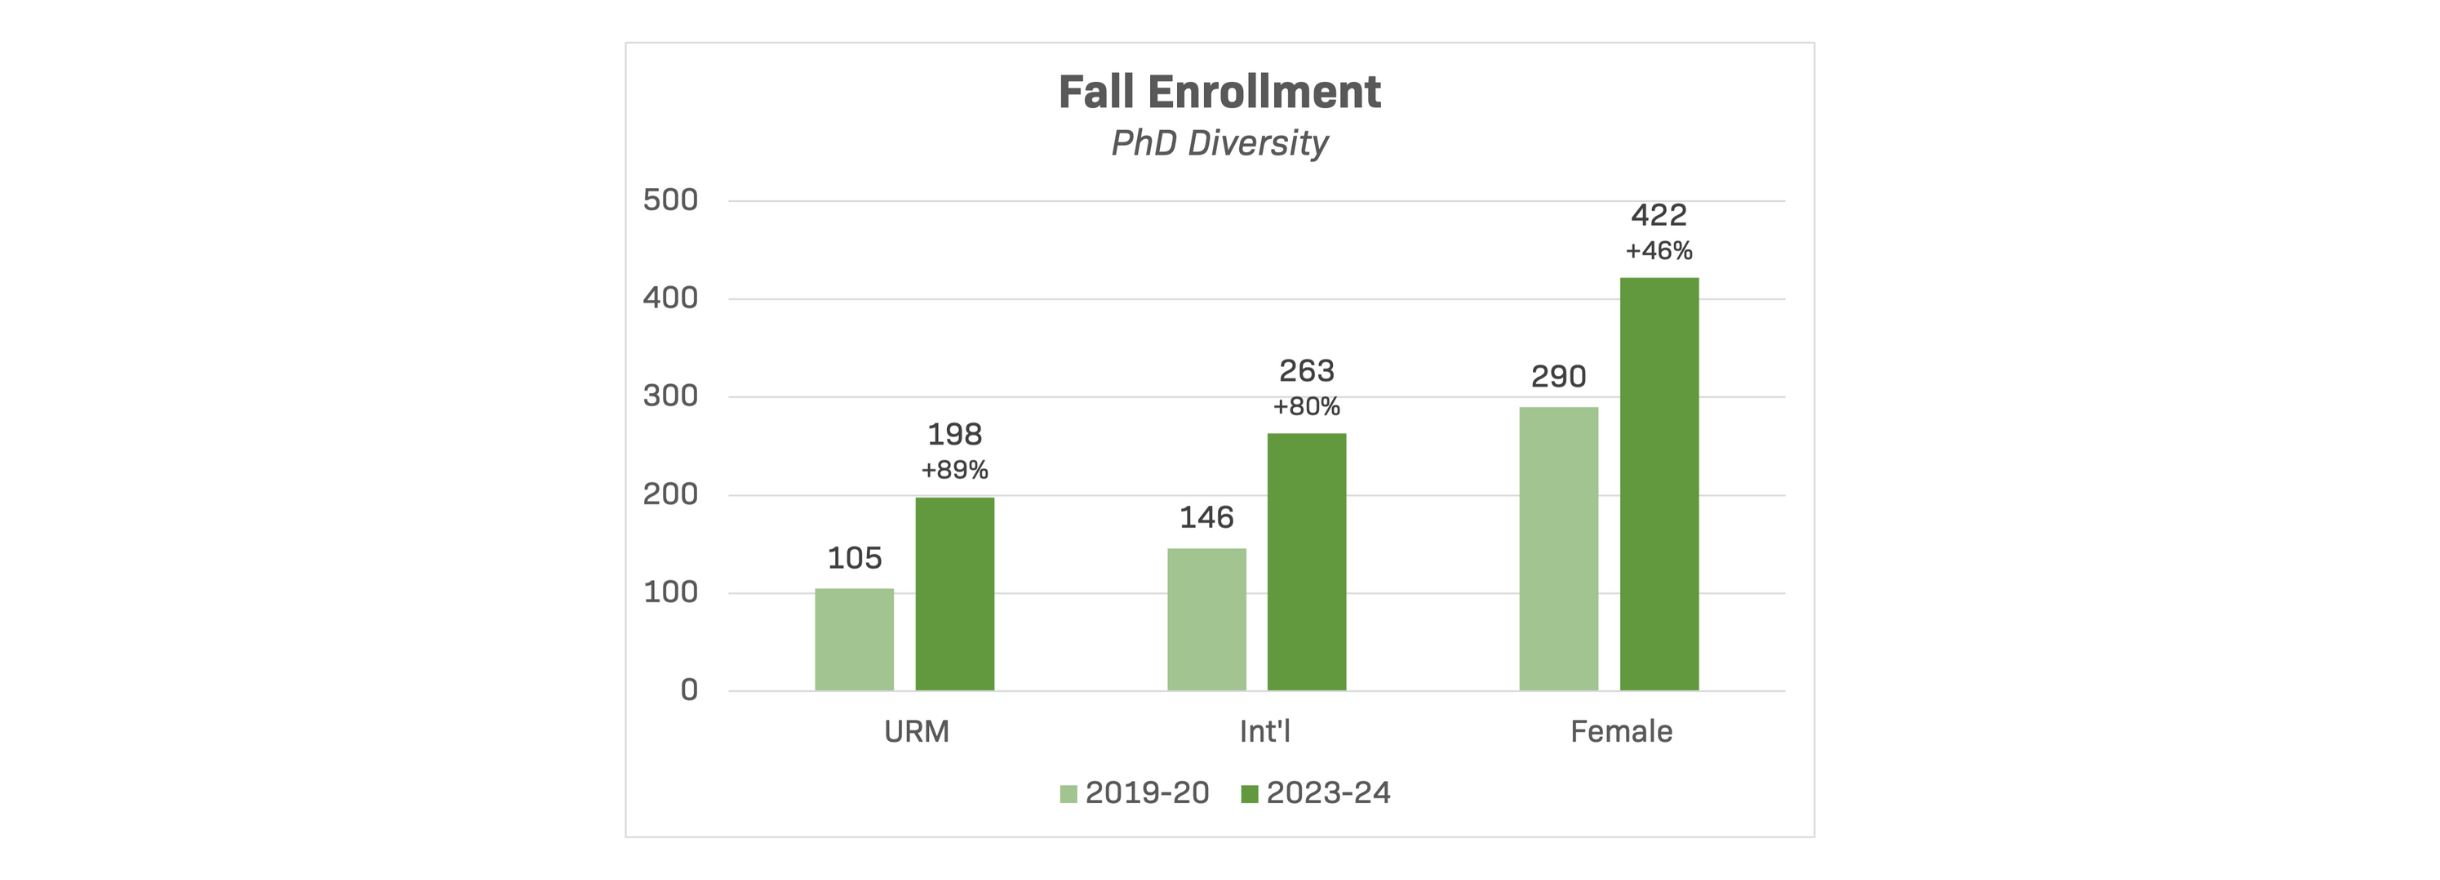 More Inclusive - PhD Diversity